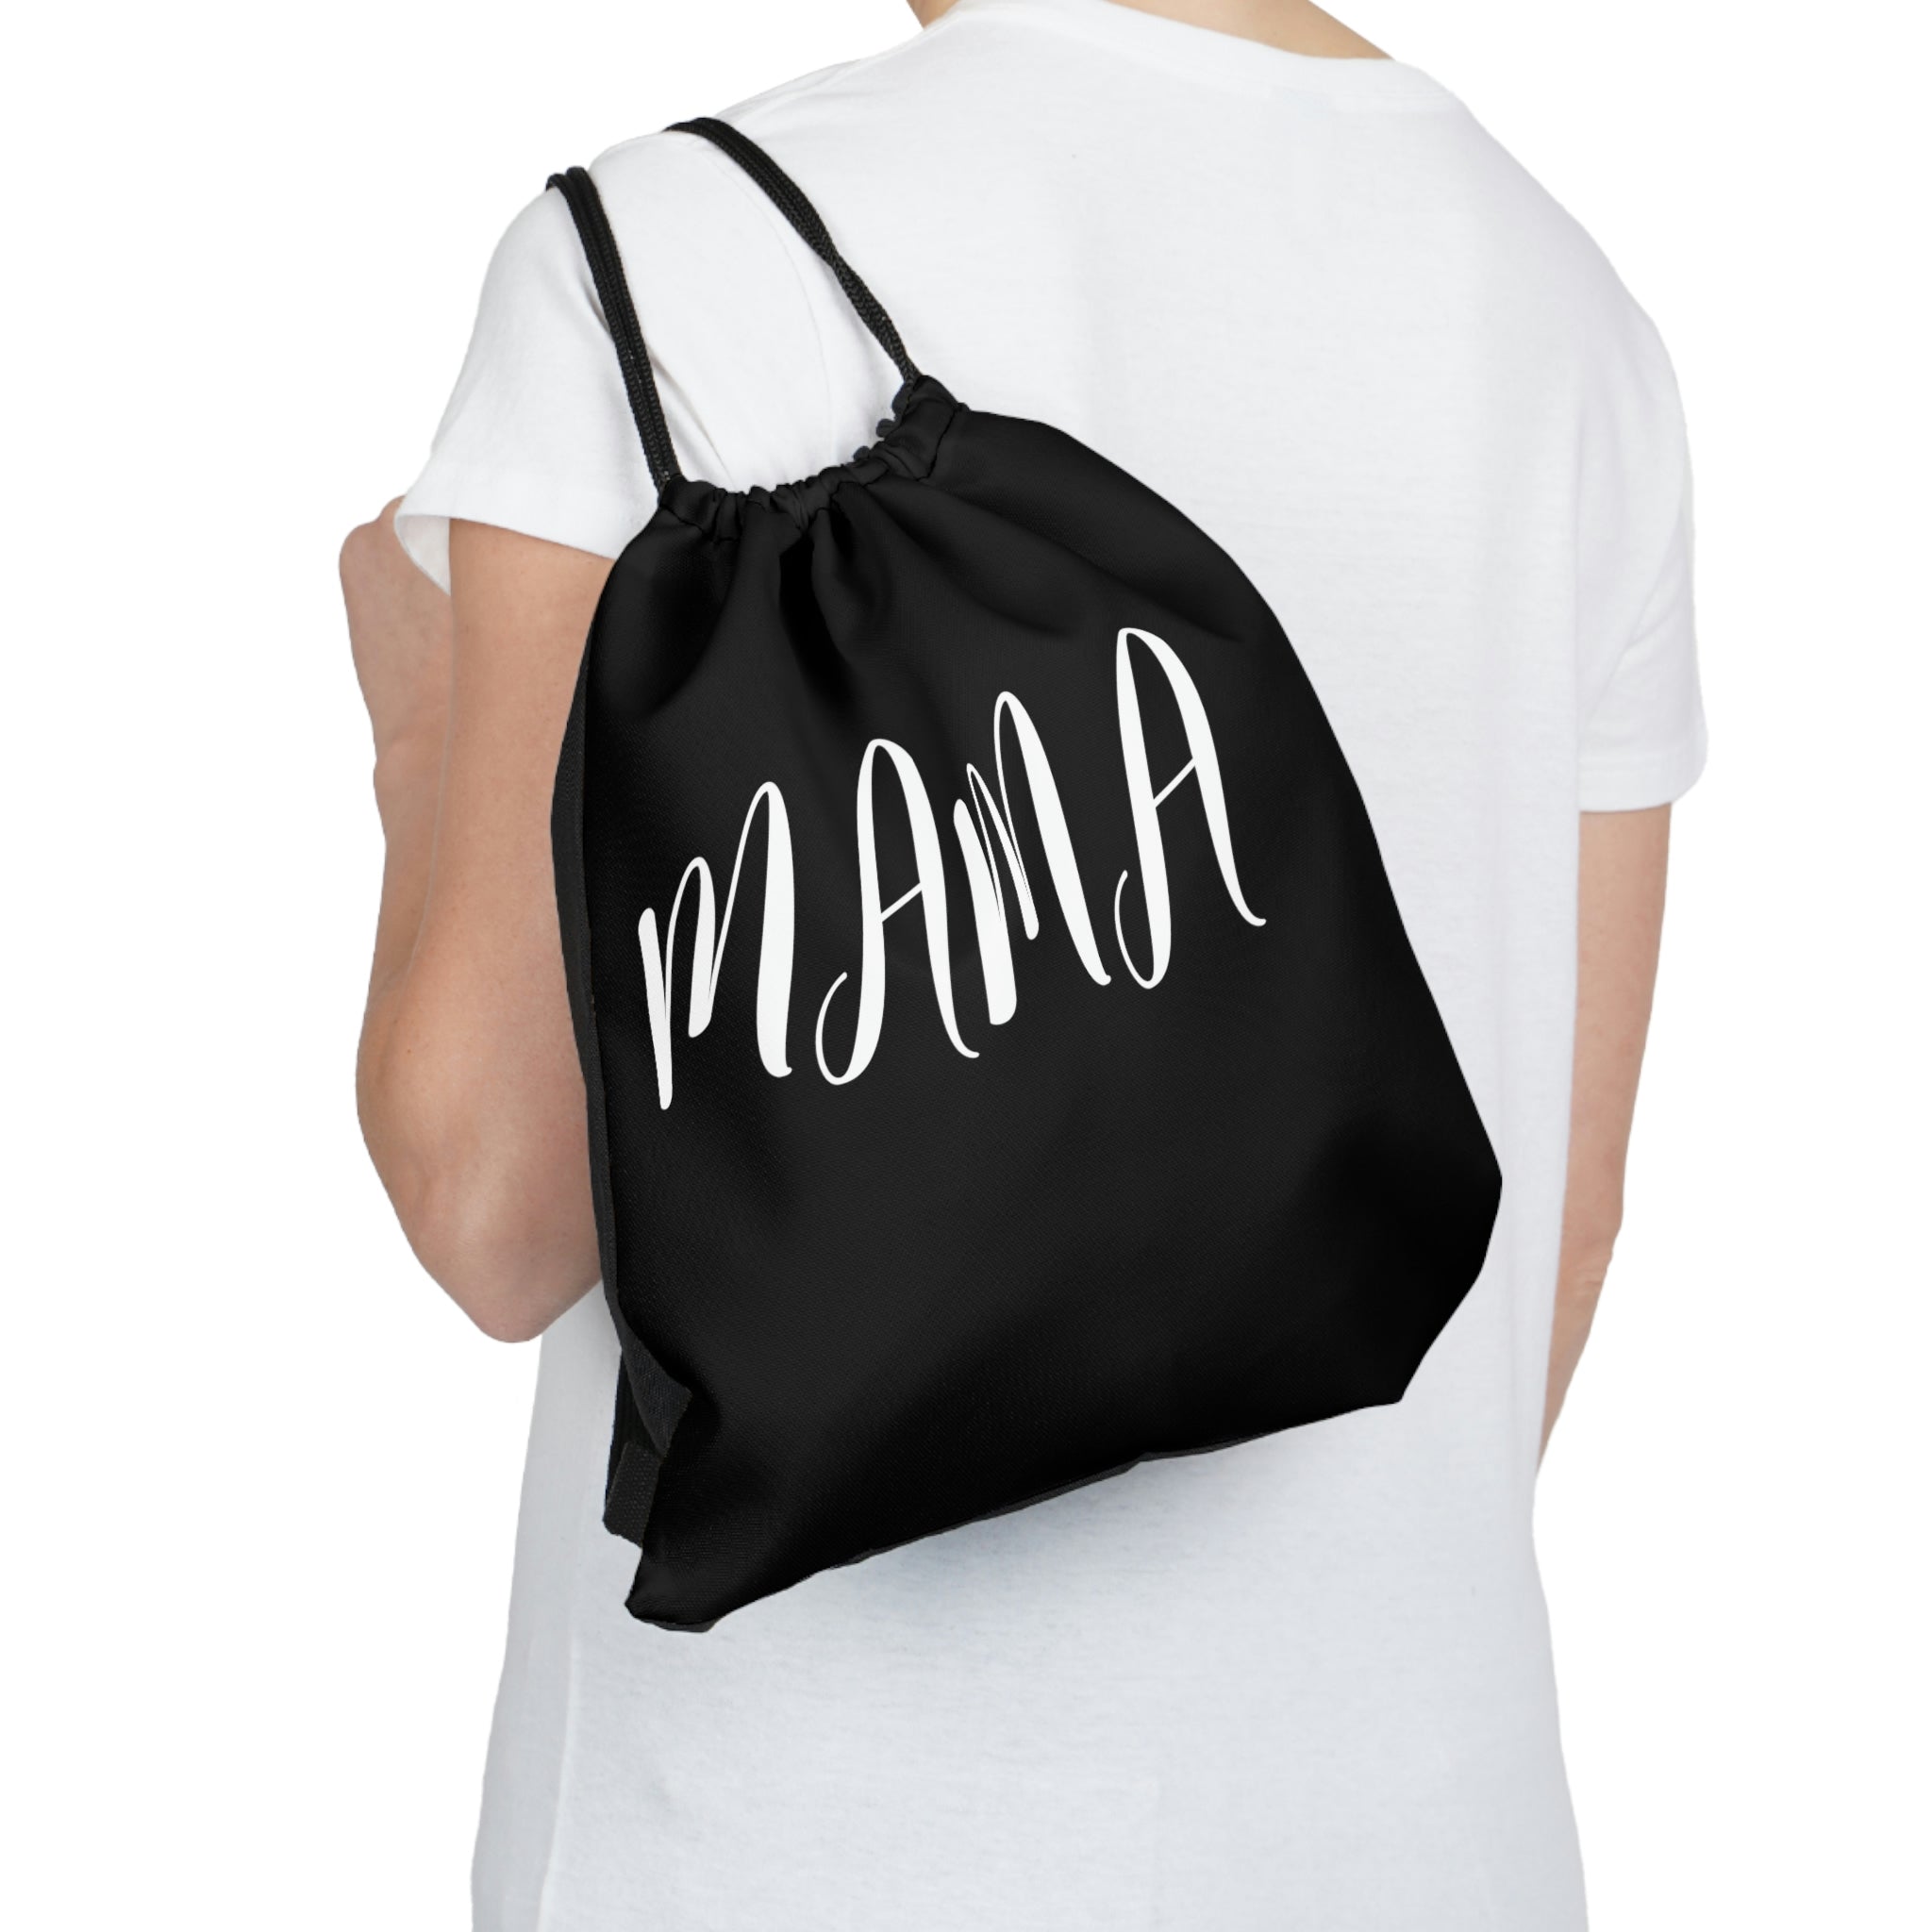 Mama Outdoor Drawstring Bag